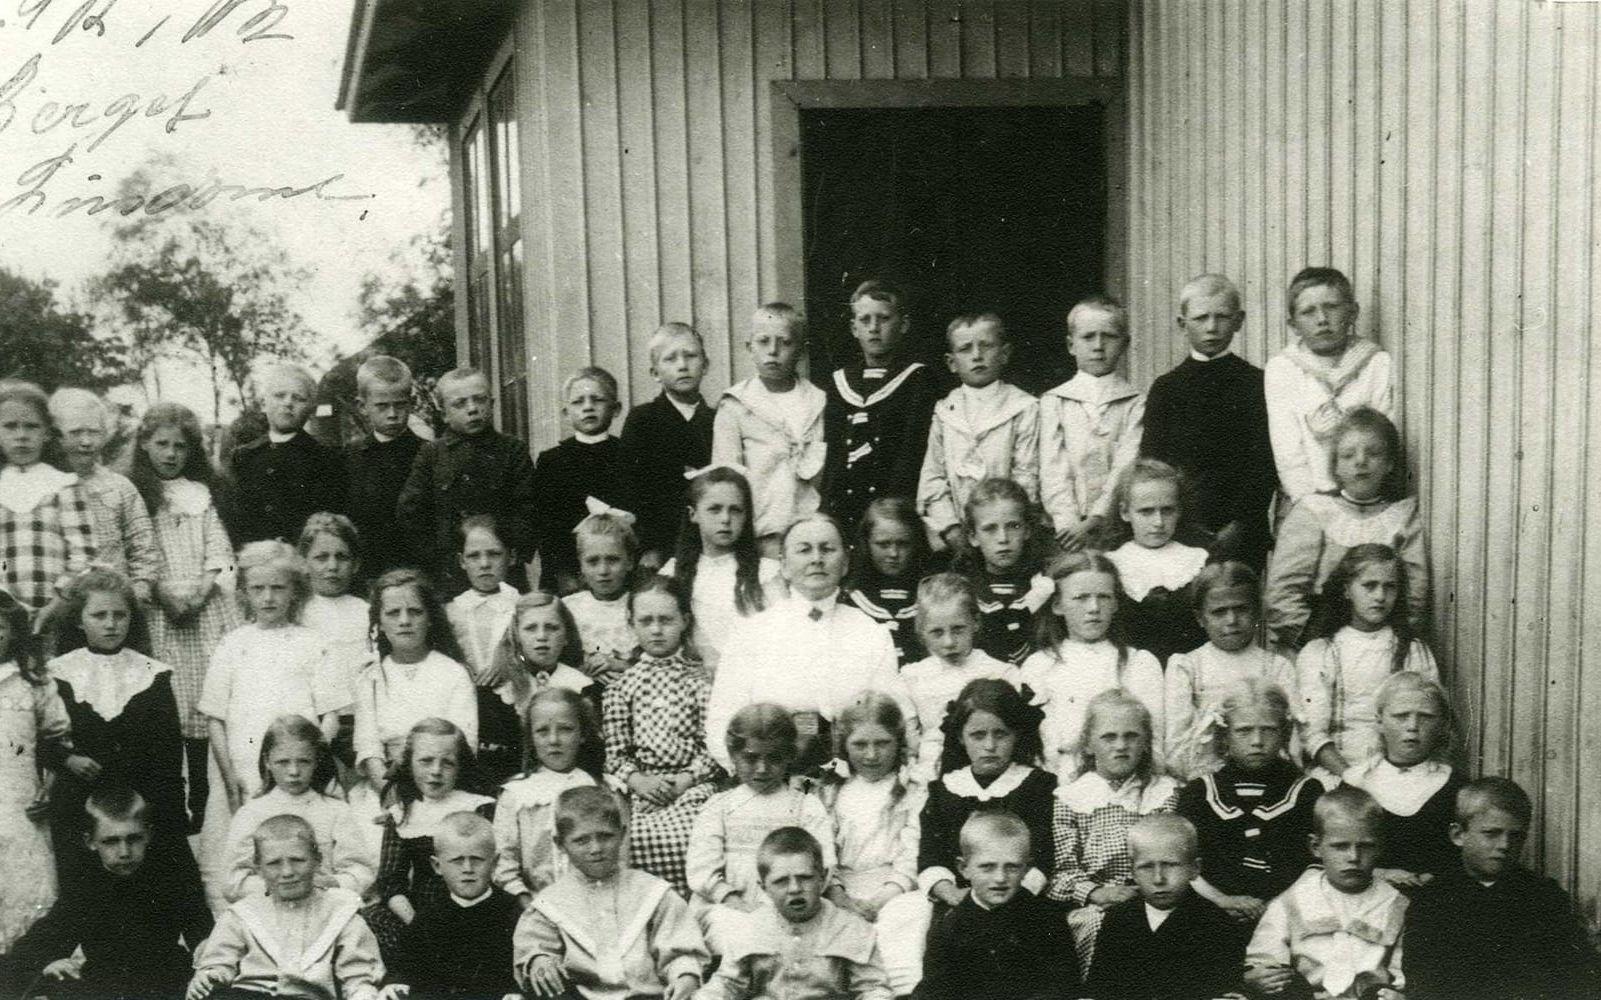 Lindomes äldsta skola, södra Kyrkskolan, invigdes 1865 nära kyrkan. Här visas en skolklass i början av 1900-talet. Norra Kyrkskolan som ligger bredvid invigdes 1903.  Båda skolhusen används idag av nuvarande Sinntorpsskolan. 